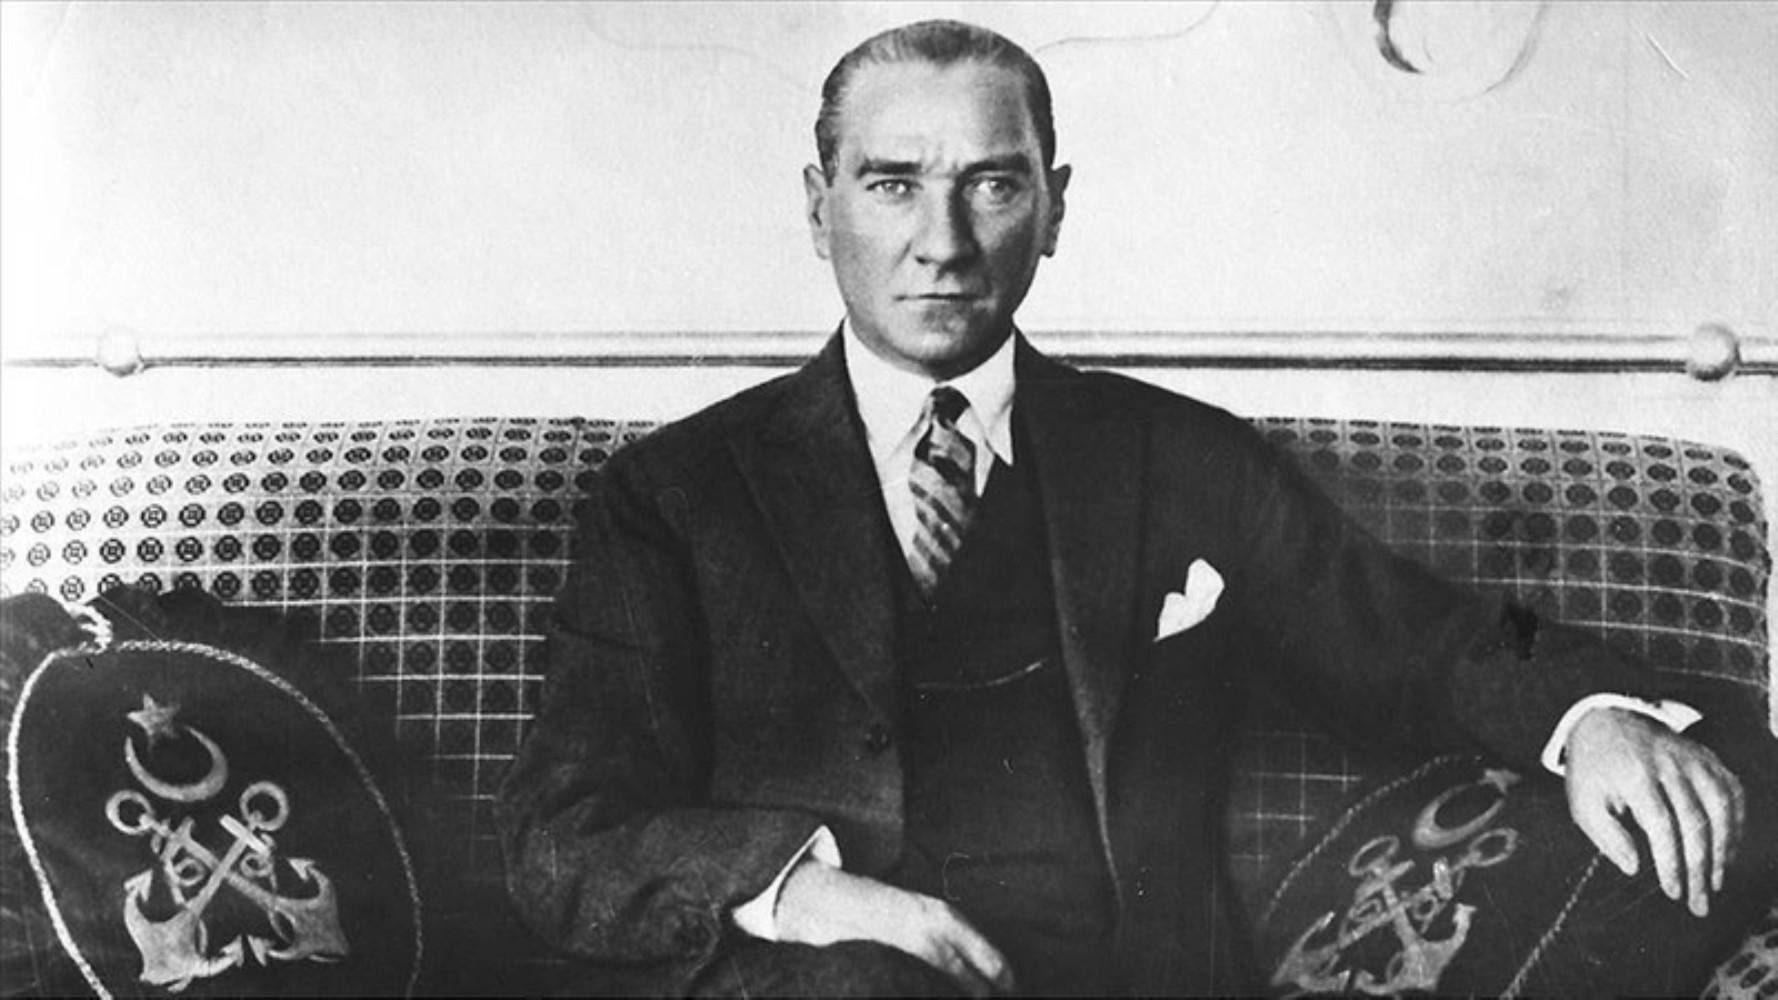 Atatürk'e önerilen 13 soyadı! İşte anlamları...